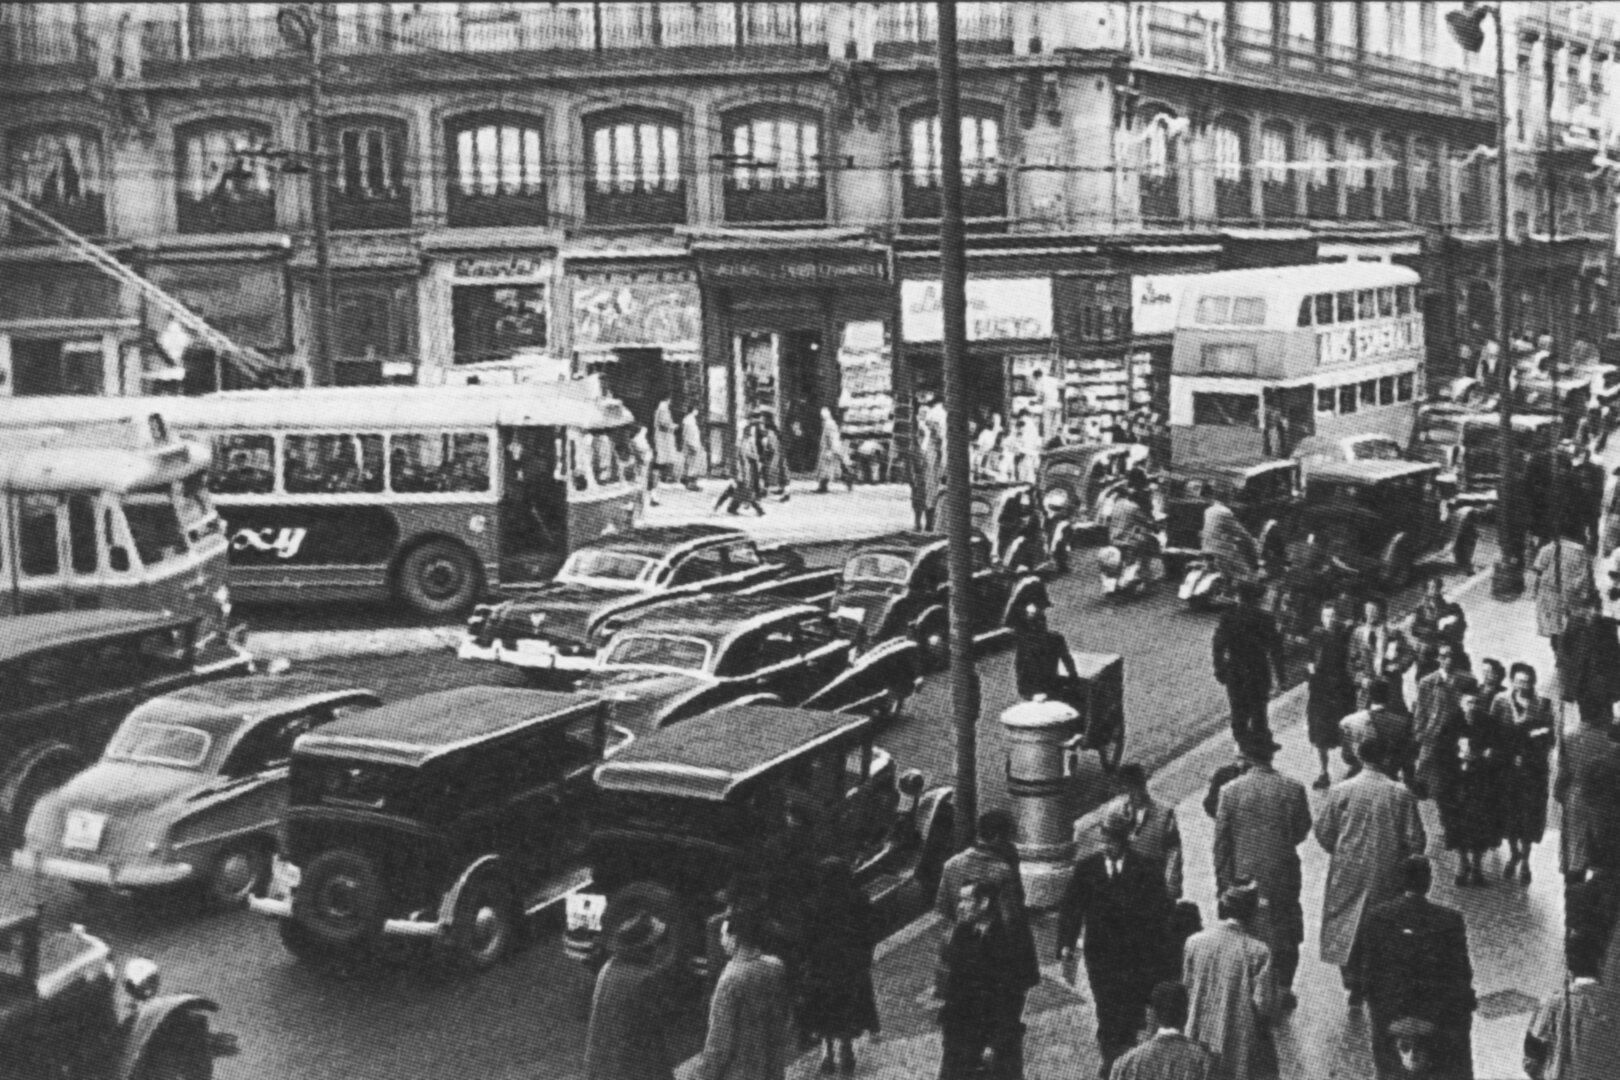 Puerta del Sol Madrid 1953